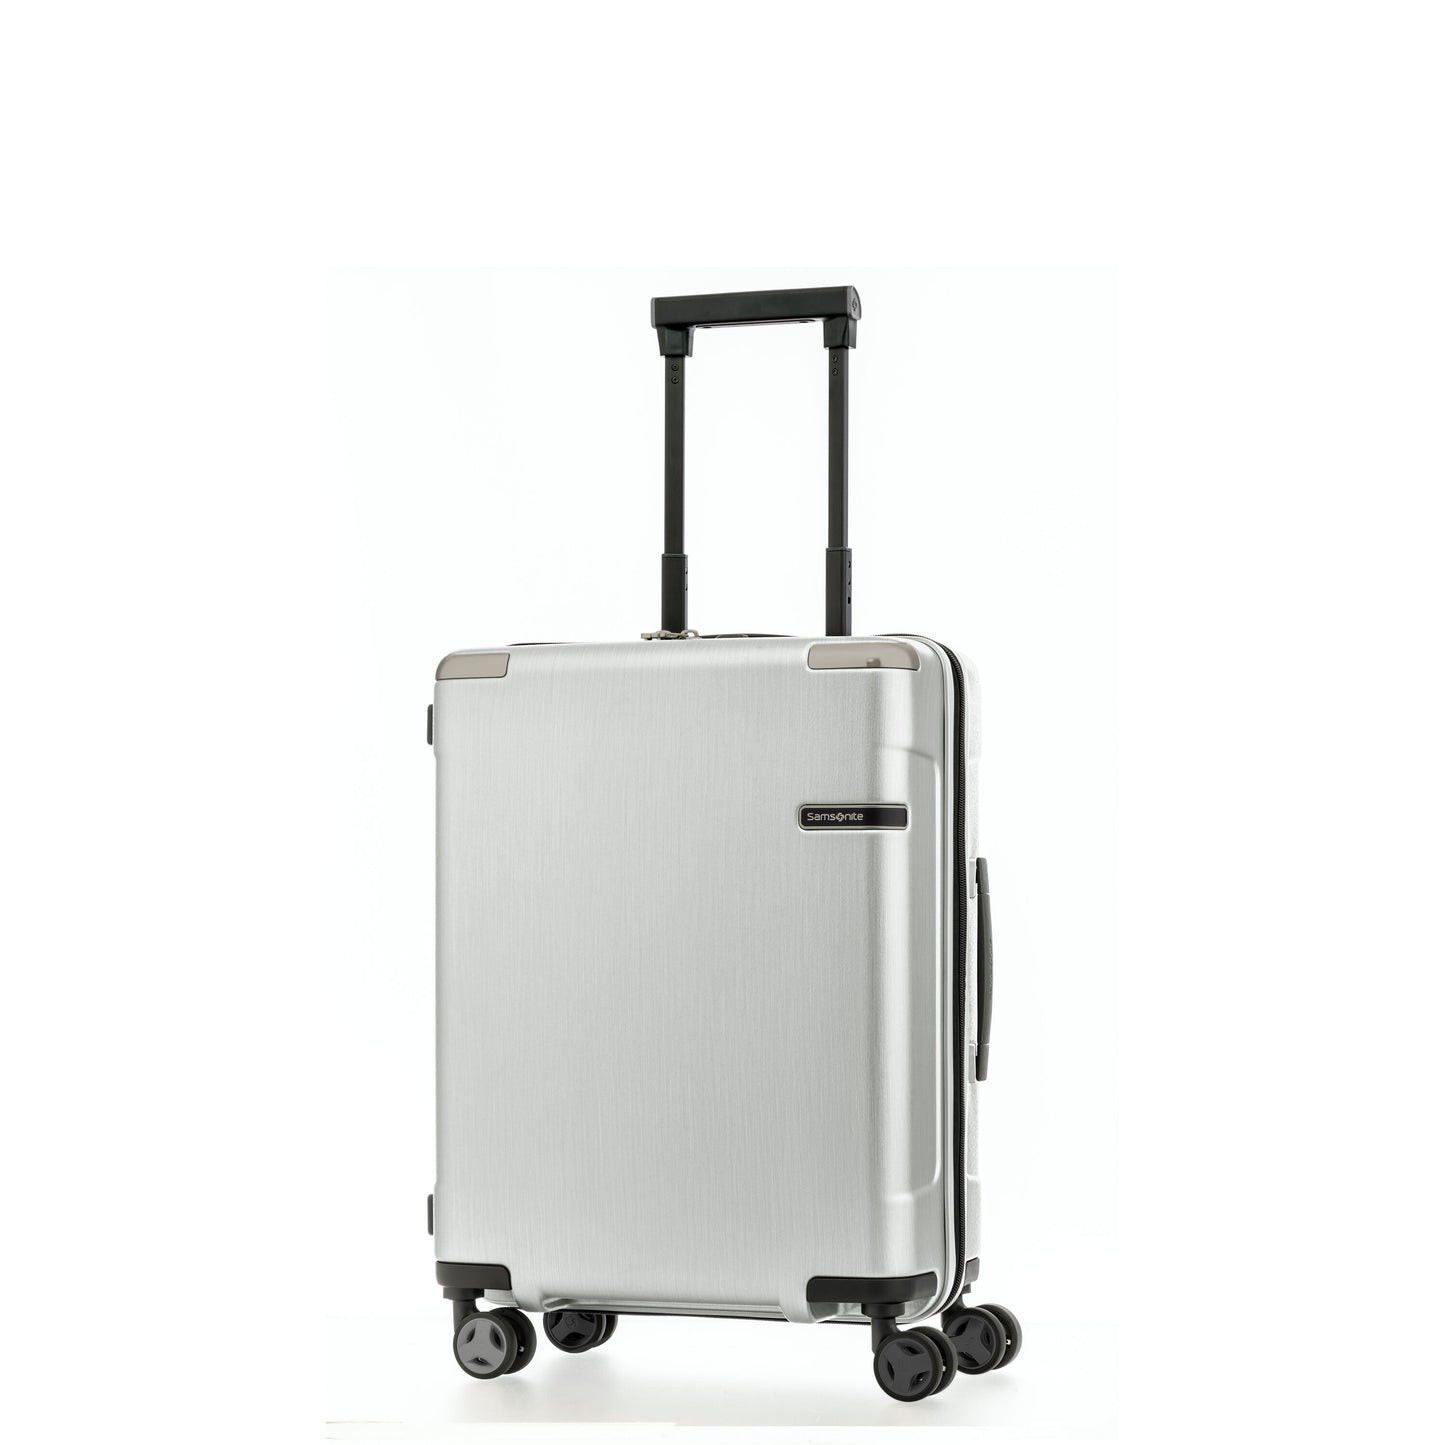 Samsonite Evoa Hardside Spinner Suitcases